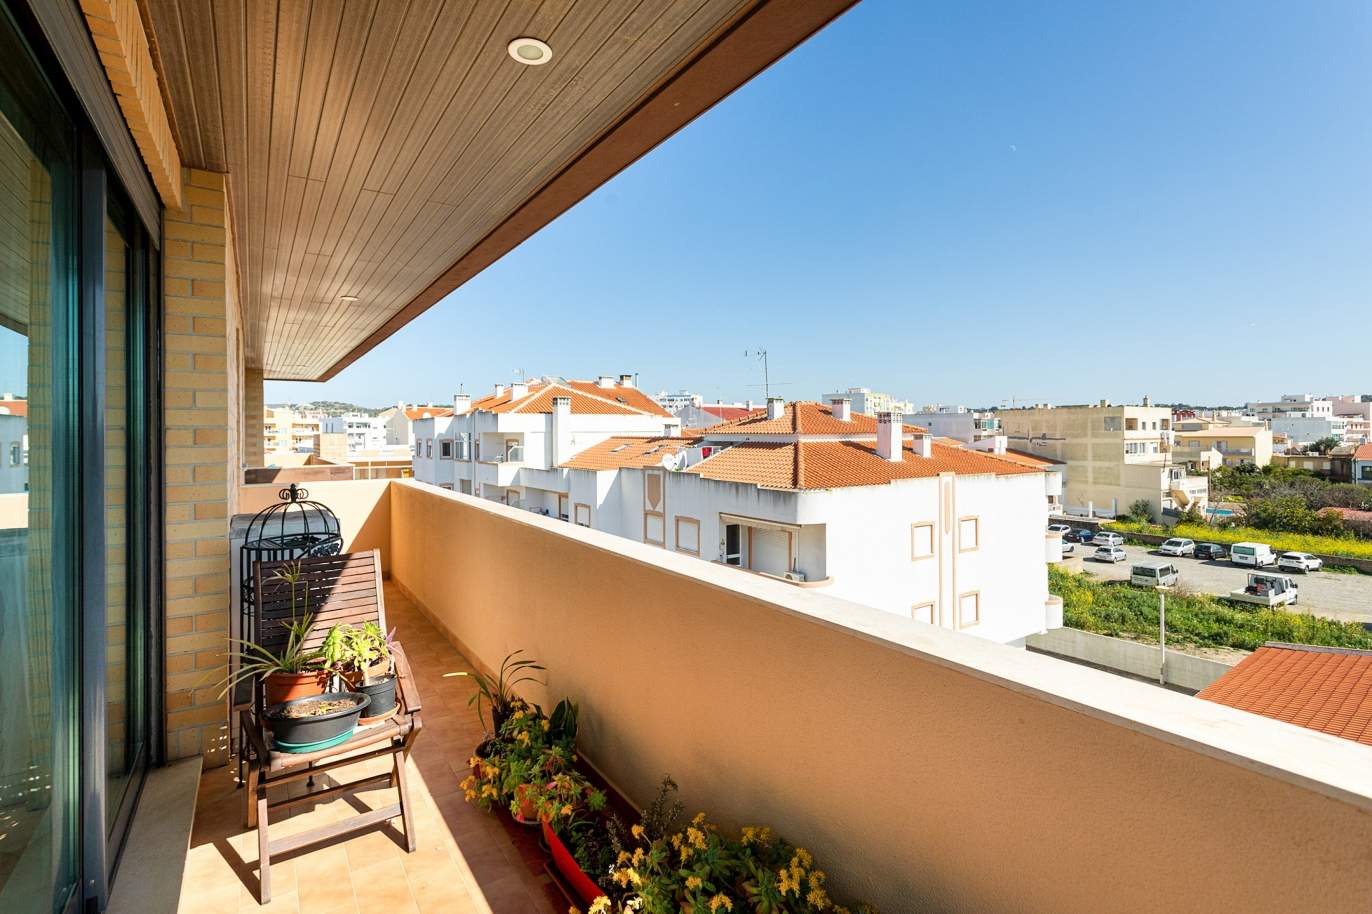 Penthouse de 3 chambres, à vendre, dans le centre de Loulé, Algarve - Portugal_192281